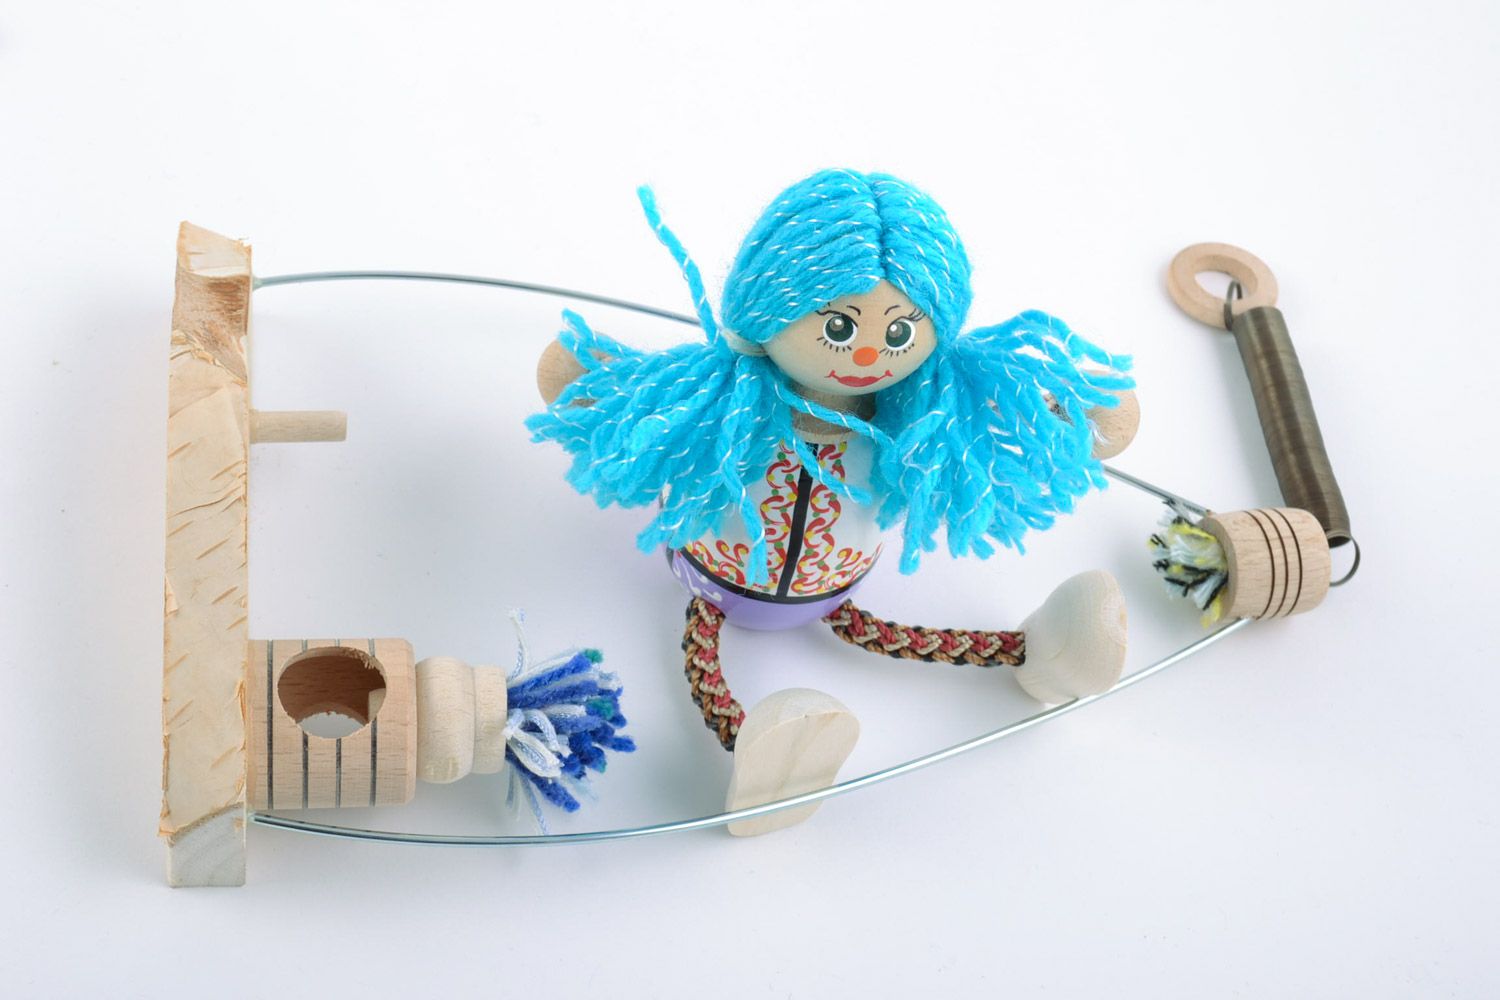 Holz Spielzeug Mädchen mit blauem Haar bemalt künstlerisch schön Handarbeit toll foto 5